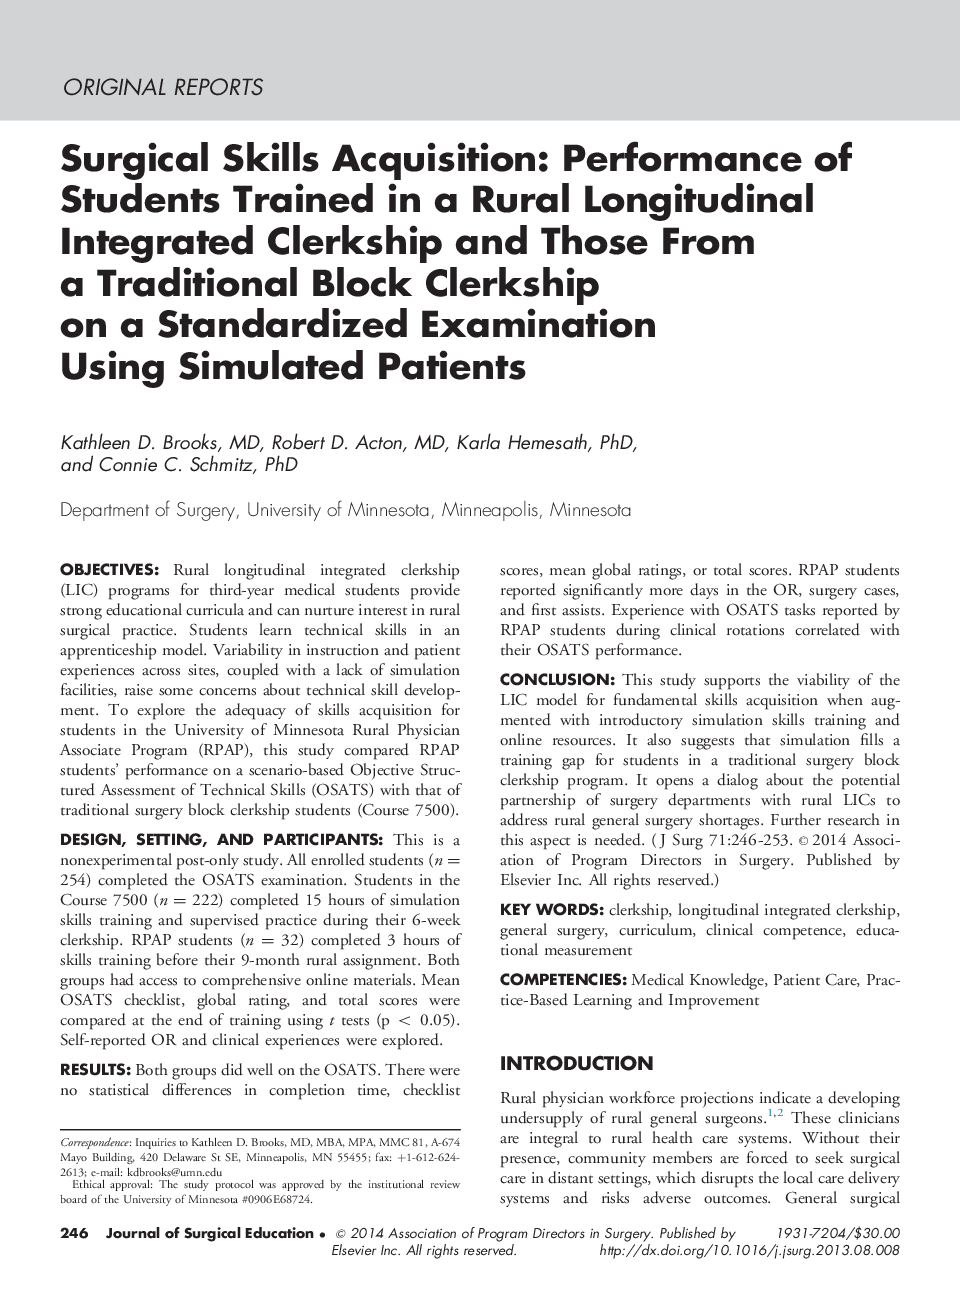 اکتساب مهارت های جراحی: عملکرد دانش آموزانی که در اداره یکپارچه طولی روستایی آموزش دیده اند و کسانی که از یک بلوک سنتی در آزمون استاندارد با استفاده از بیماران شبیه سازی شده 